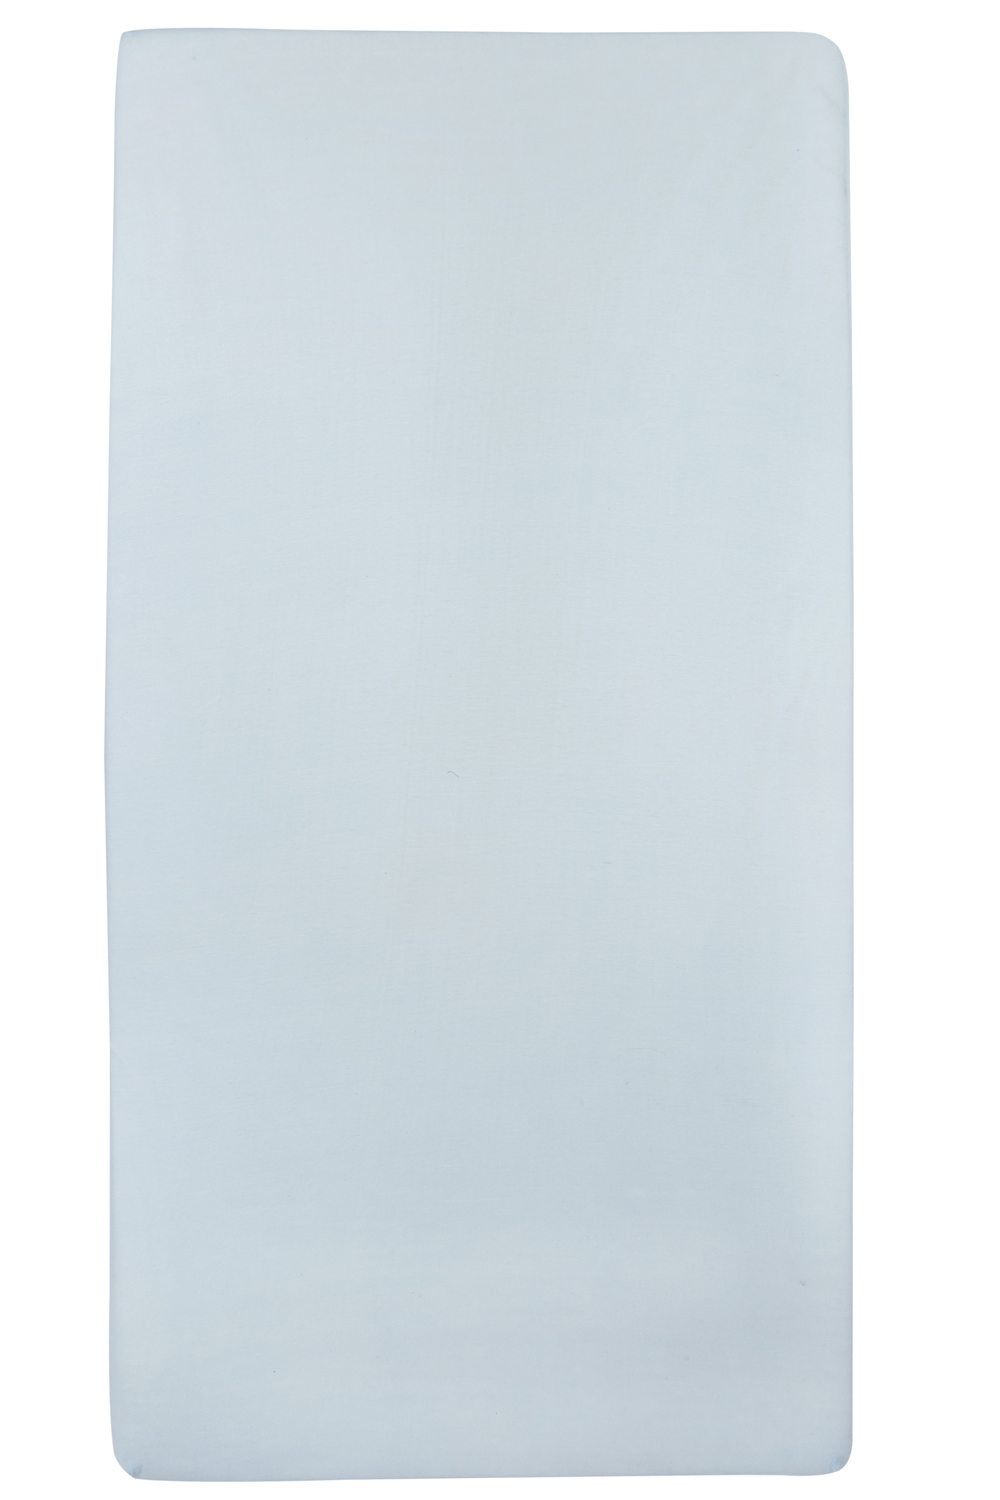 Jersey Hoeslaken - Lichtblauw - 60x120cm